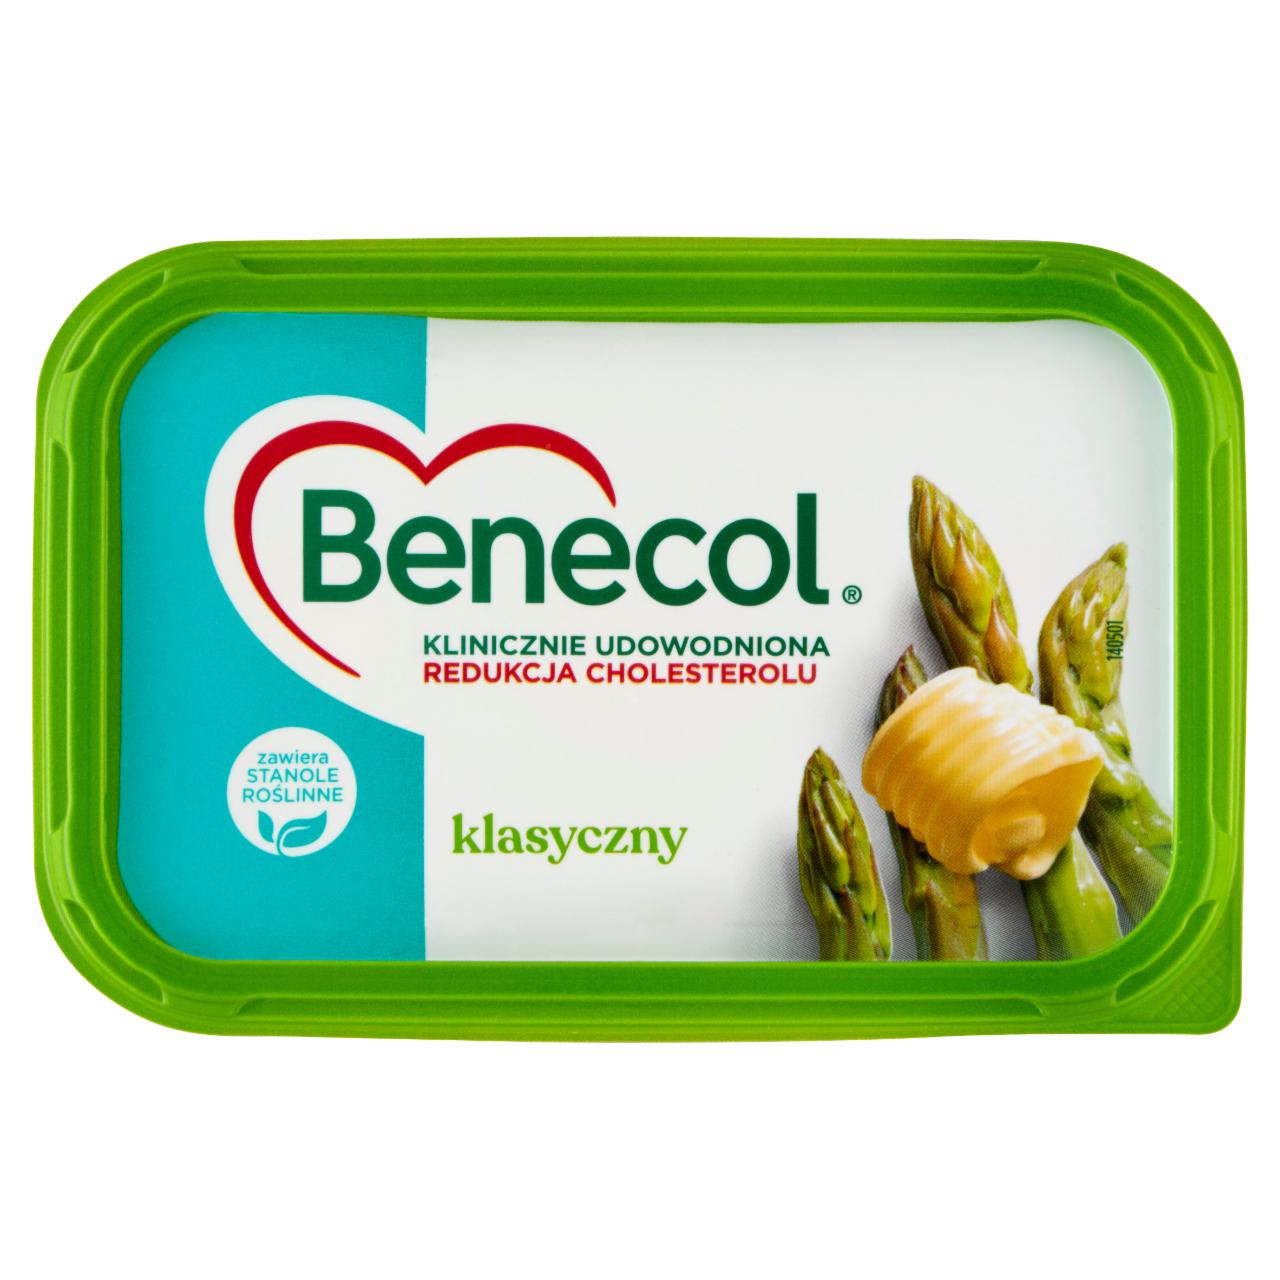 Фото - масло-маргарин классическое Benecol